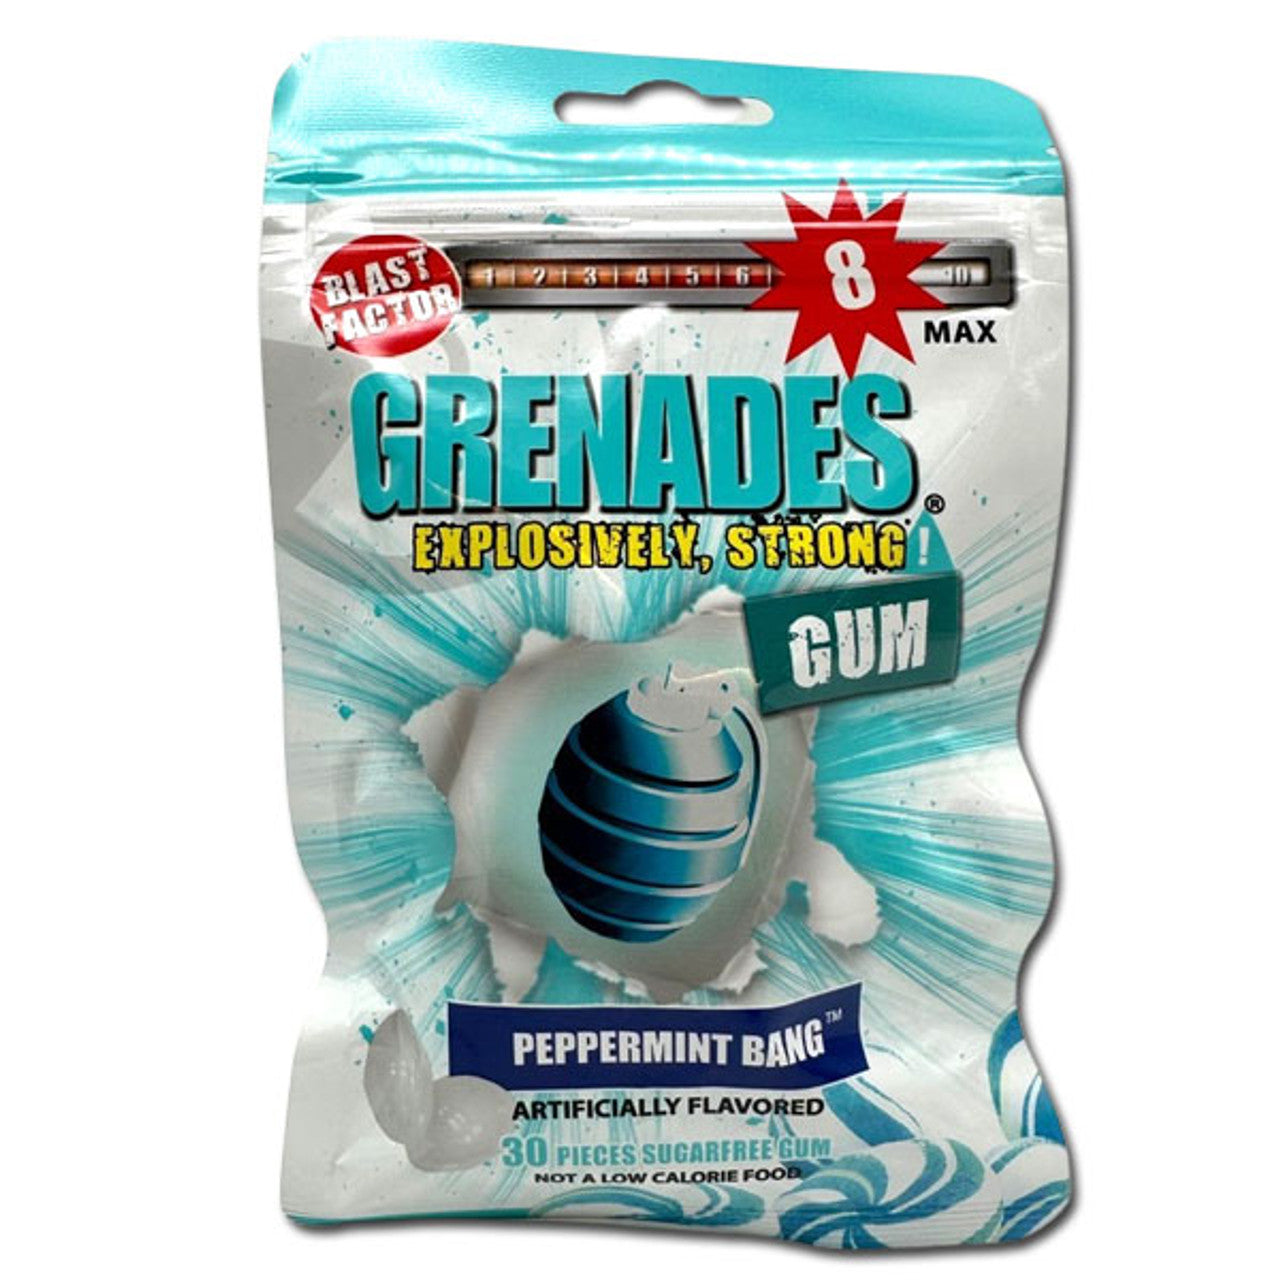 Grenades Gum Peppermint BANG